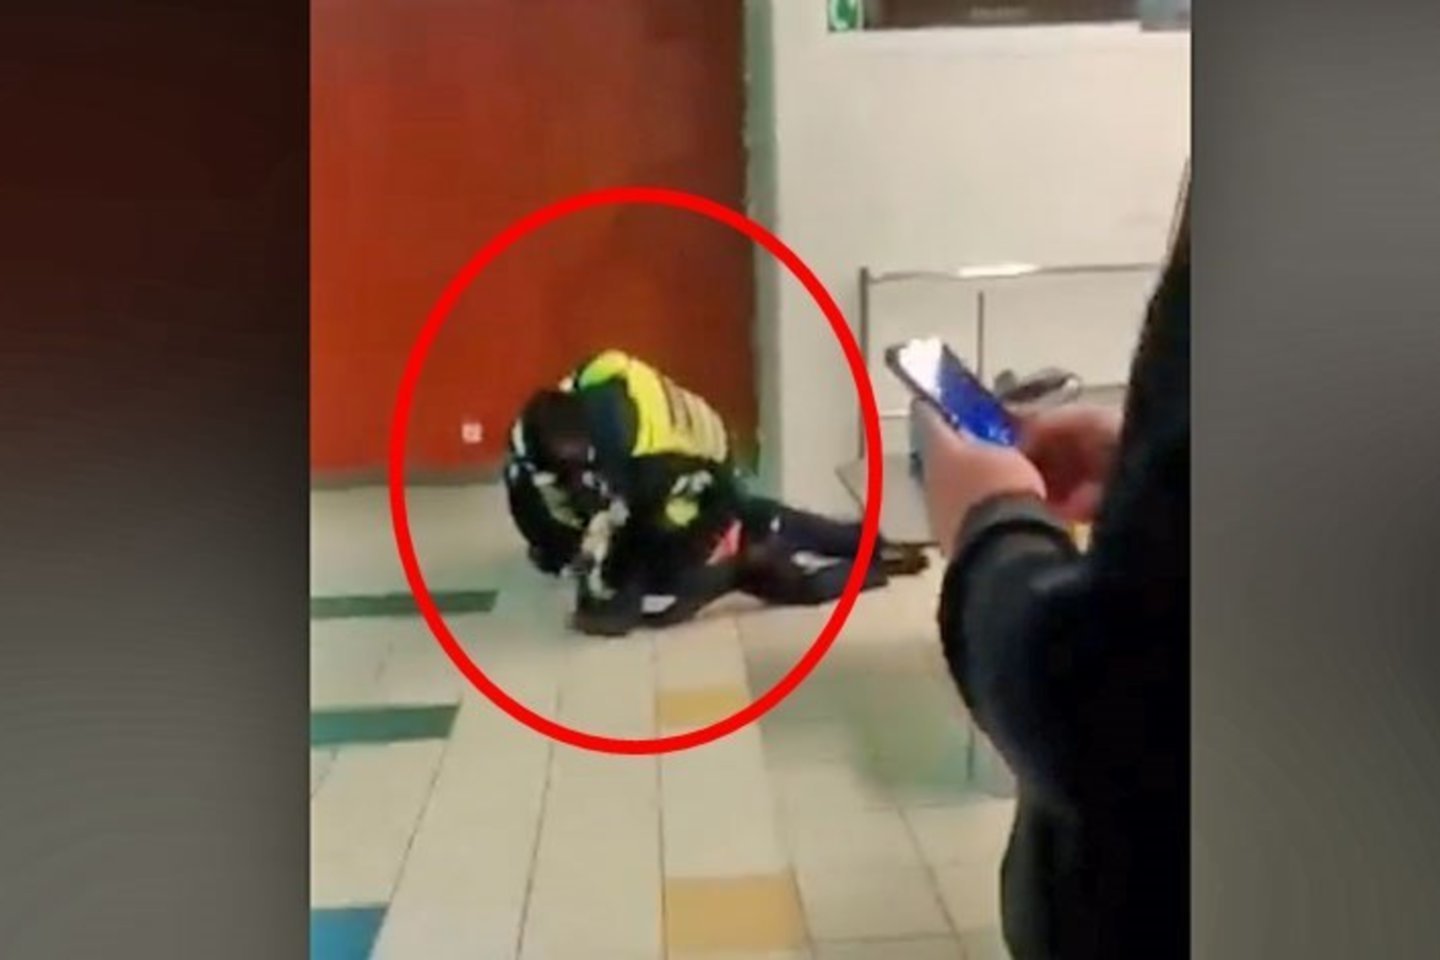  Elektros šoku sulaikytojo galvą talžęs pareigūnas išmestas iš policijos.<br> Stop kadras iš vaizdo medžiagos